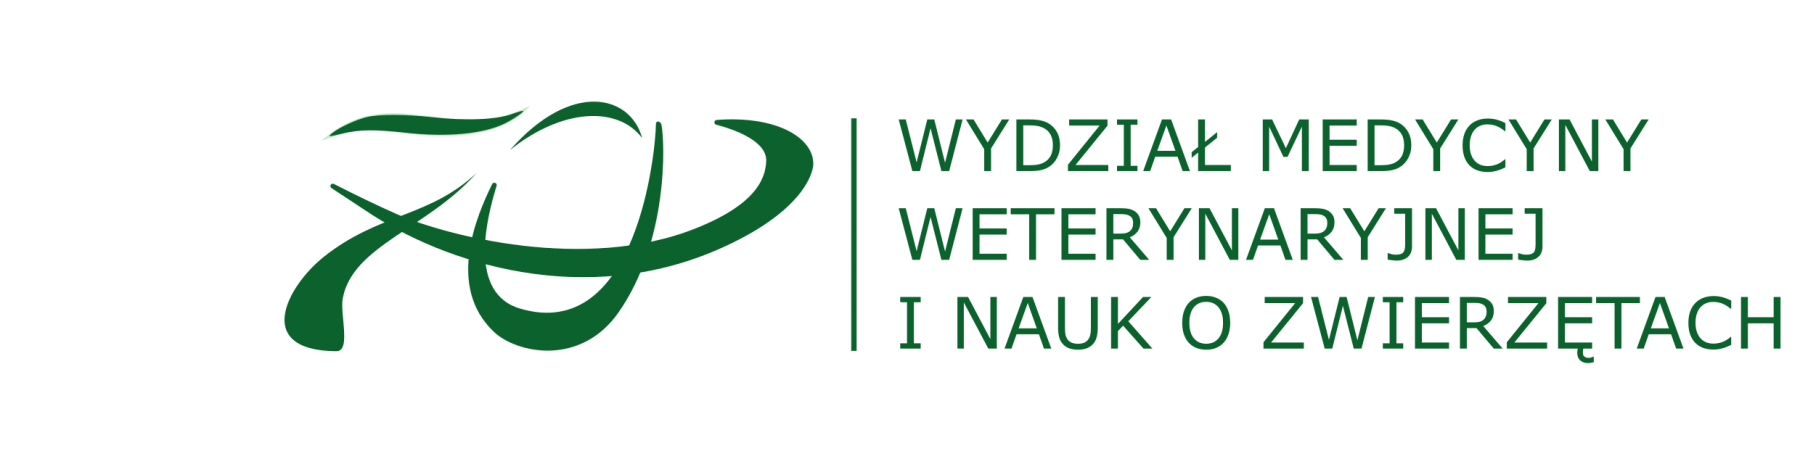 2021-11-01 logo_zielone_polskie_uklad_poziomy_70_ALLGREEN_WMWINOZ.png